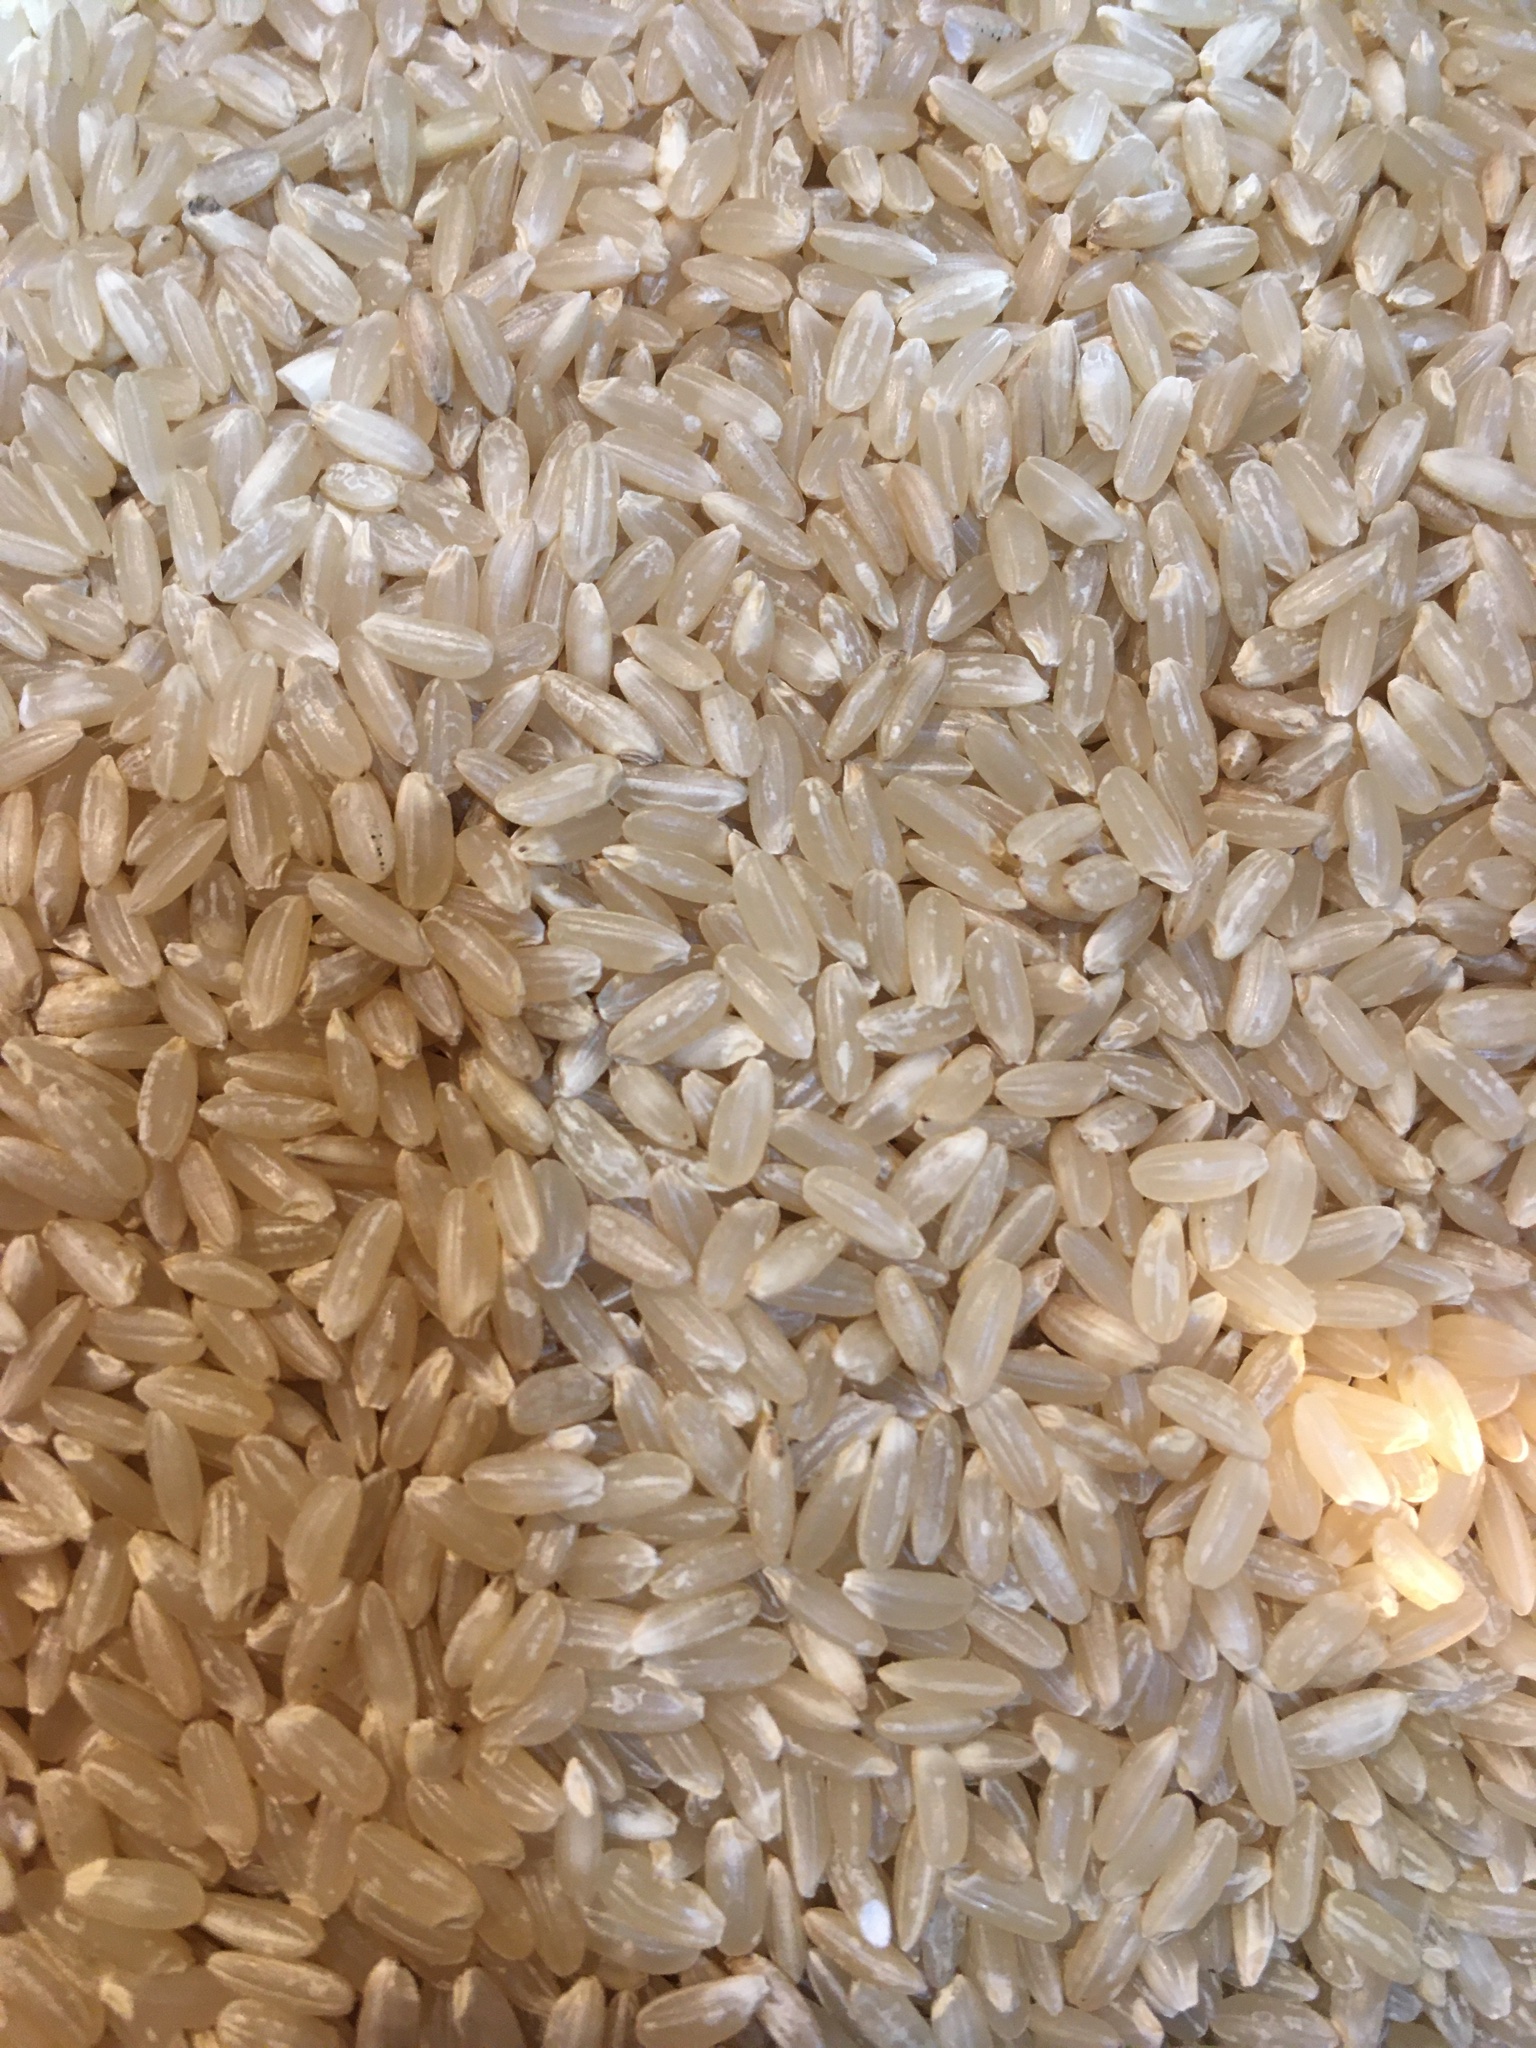 農家産直米すえひろ on Twitter: "珍しいお米のご紹介致します。 主食米はジャポニカ米ですがタイ米のように長粒系のお米はインディカ米 であります。日本のお米としてインディカ米の特徴を活かした品種【華麗舞】ジャポニカ米とインディカ米のハーフ。水を一割程少なく ...